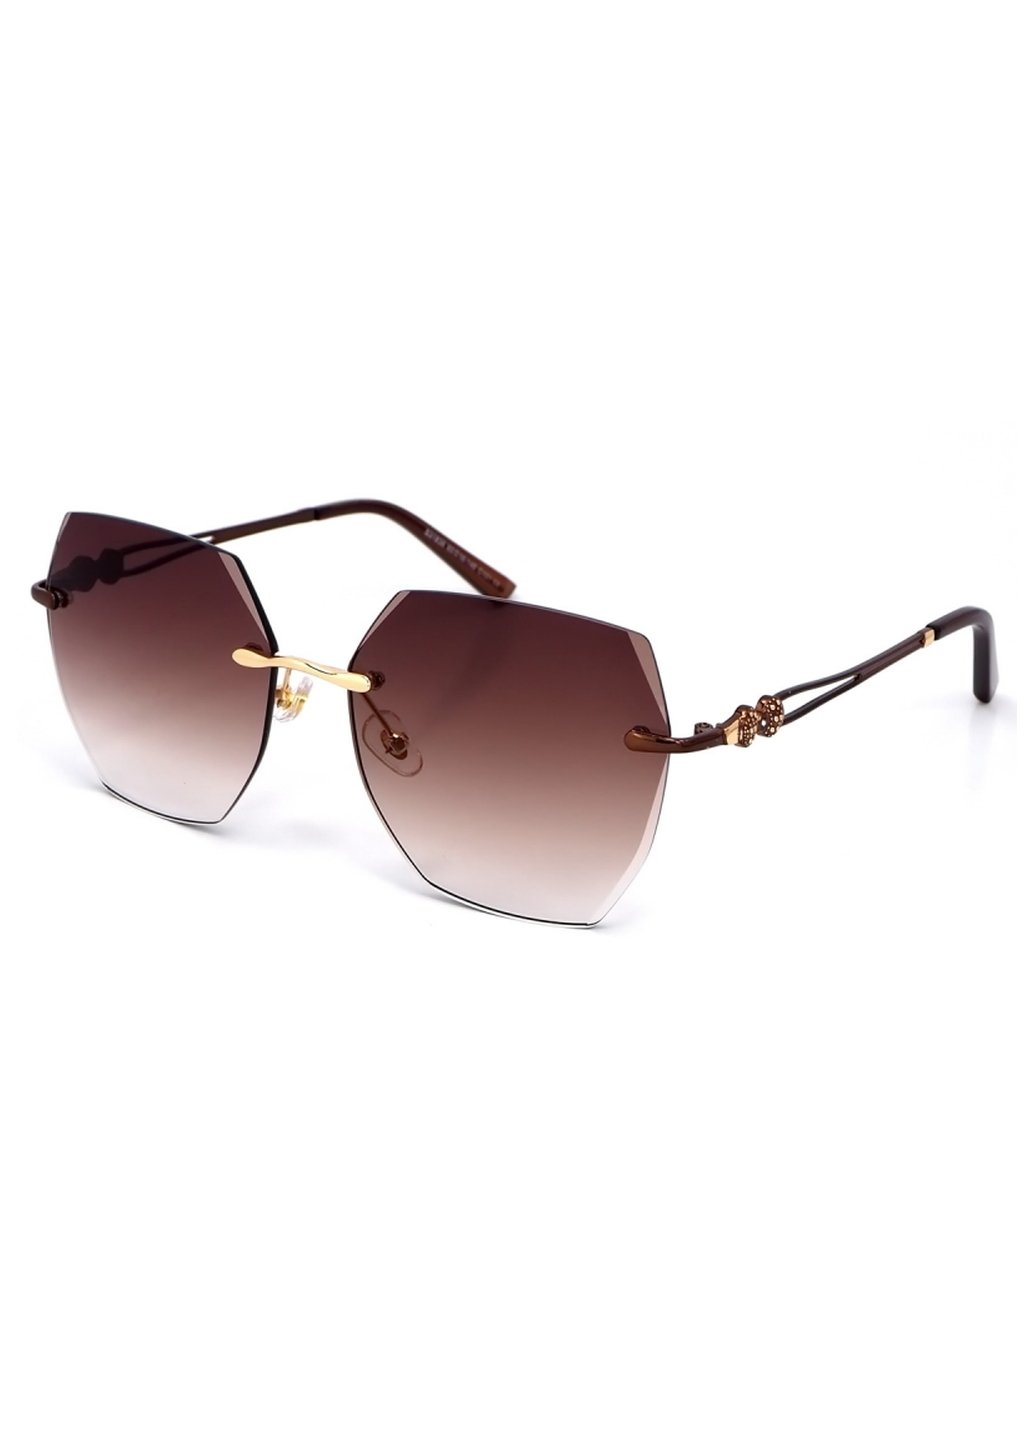 Купить Женские солнцезащитные очки Merlini с поляризацией S31836 117096 - Коричневый в интернет-магазине